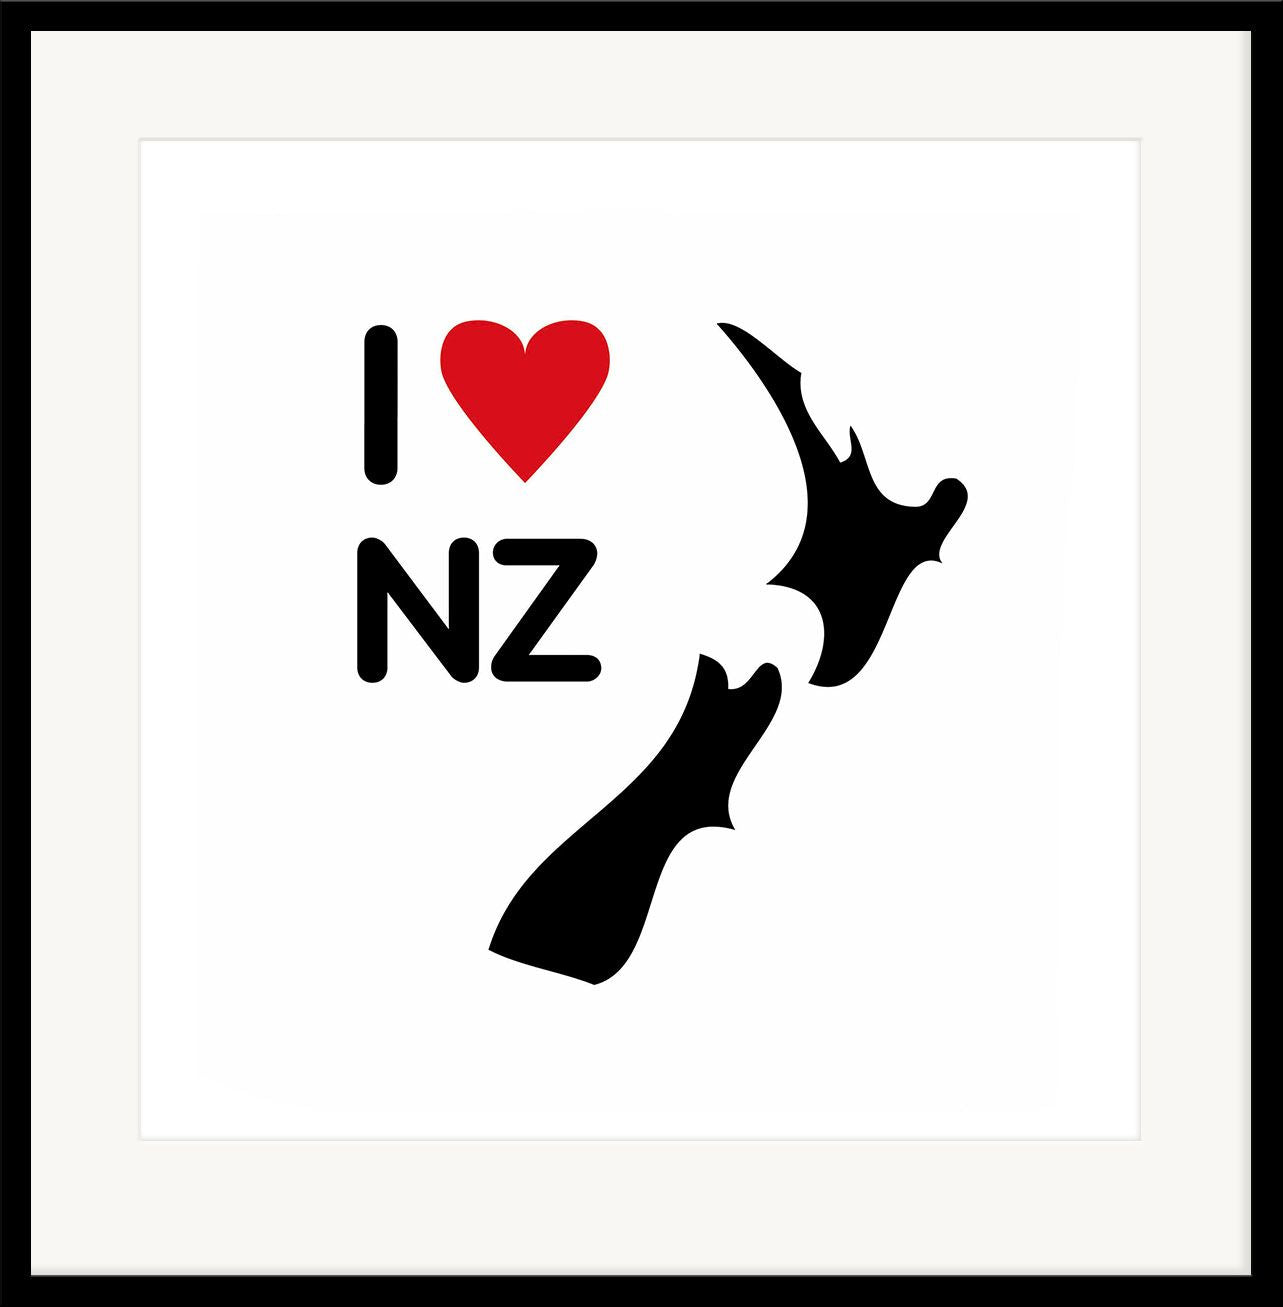 I heart NZ - Zoe Virtue